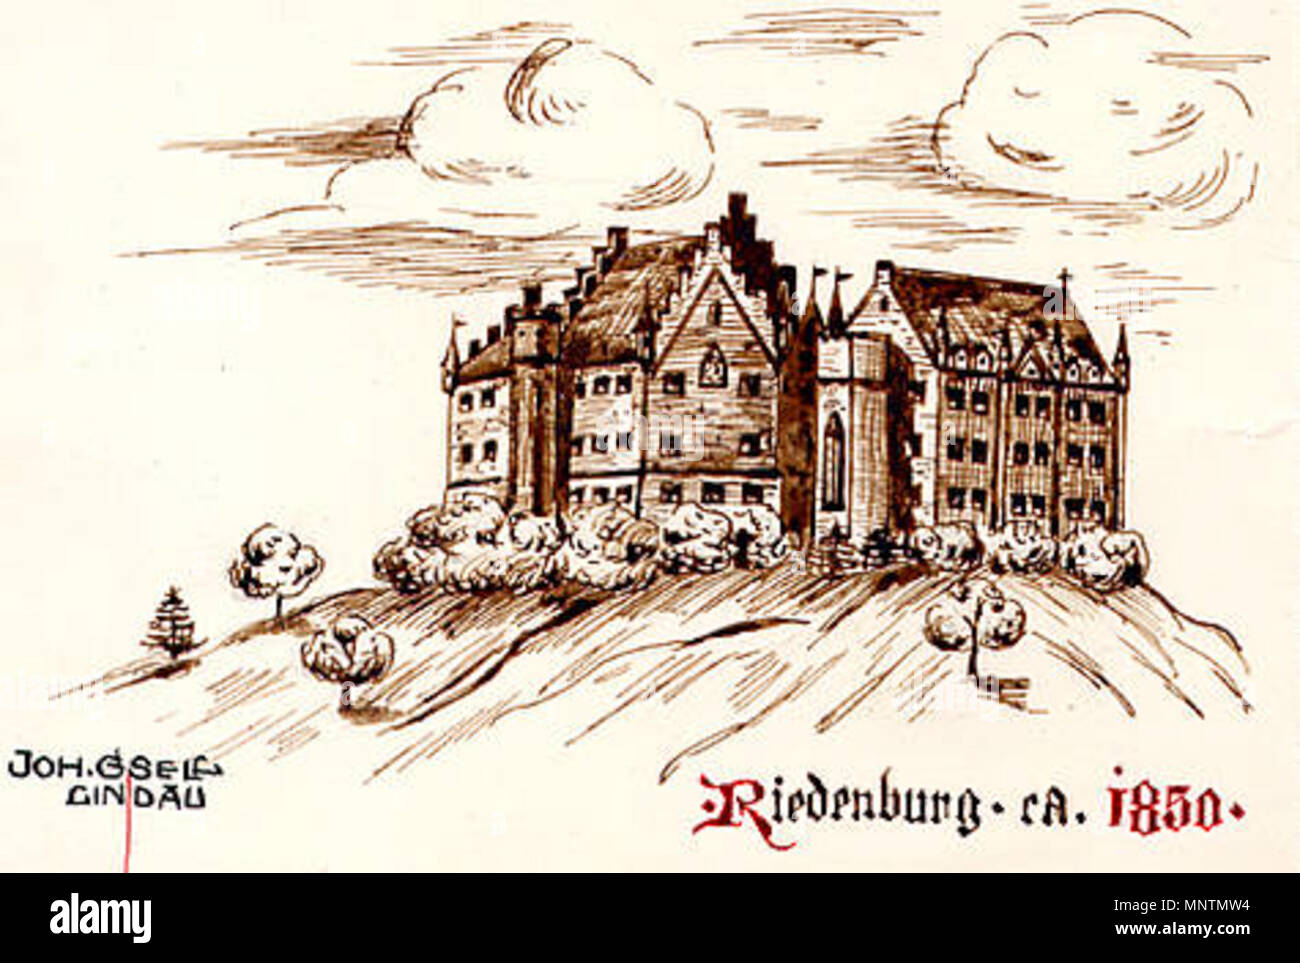 . Deutsch: Die Riedenburg in Bregenz-Rieden (Vorarlberg) um 1850 . circa 1850. Johann Gsell, Lindau 1061 Riedenburg Bregenz-Rieden Vbg 1850 Stock Photo